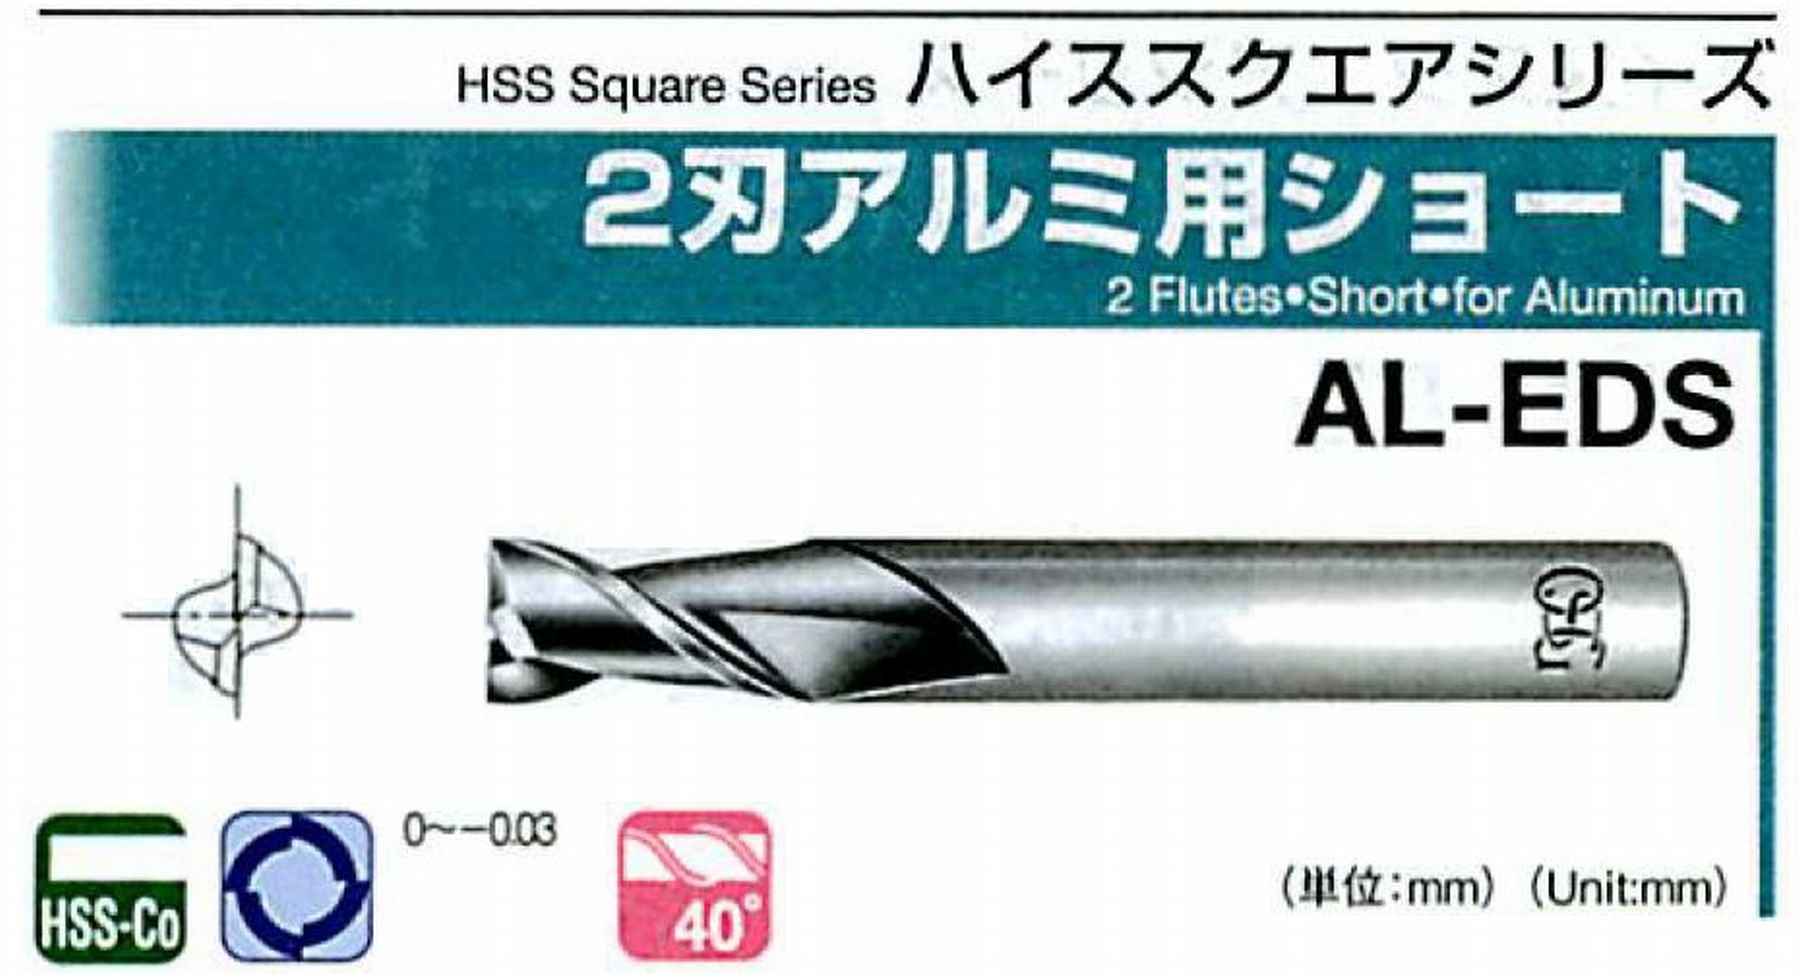 オーエスジー/OSG 2刃アルミ用ショート AL-EDS 外径27 全長125 刃長55 シャンク径25mm